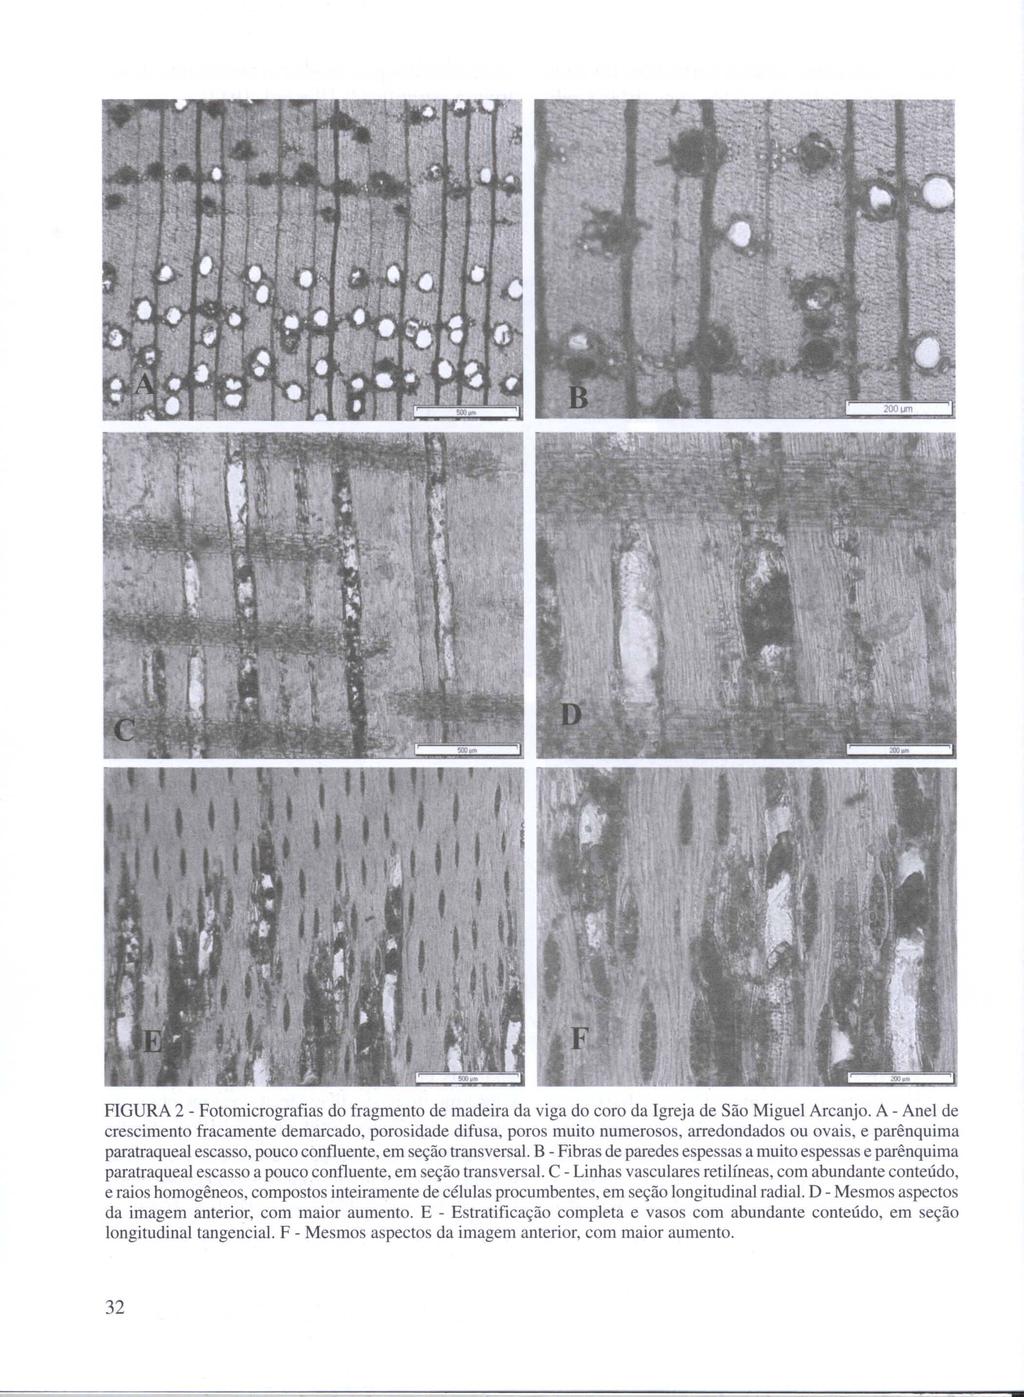 FIGURA 2 - Fotomicrografias do fragmento de madeira da viga do coro da Igreja de São Miguel Arcanjo.